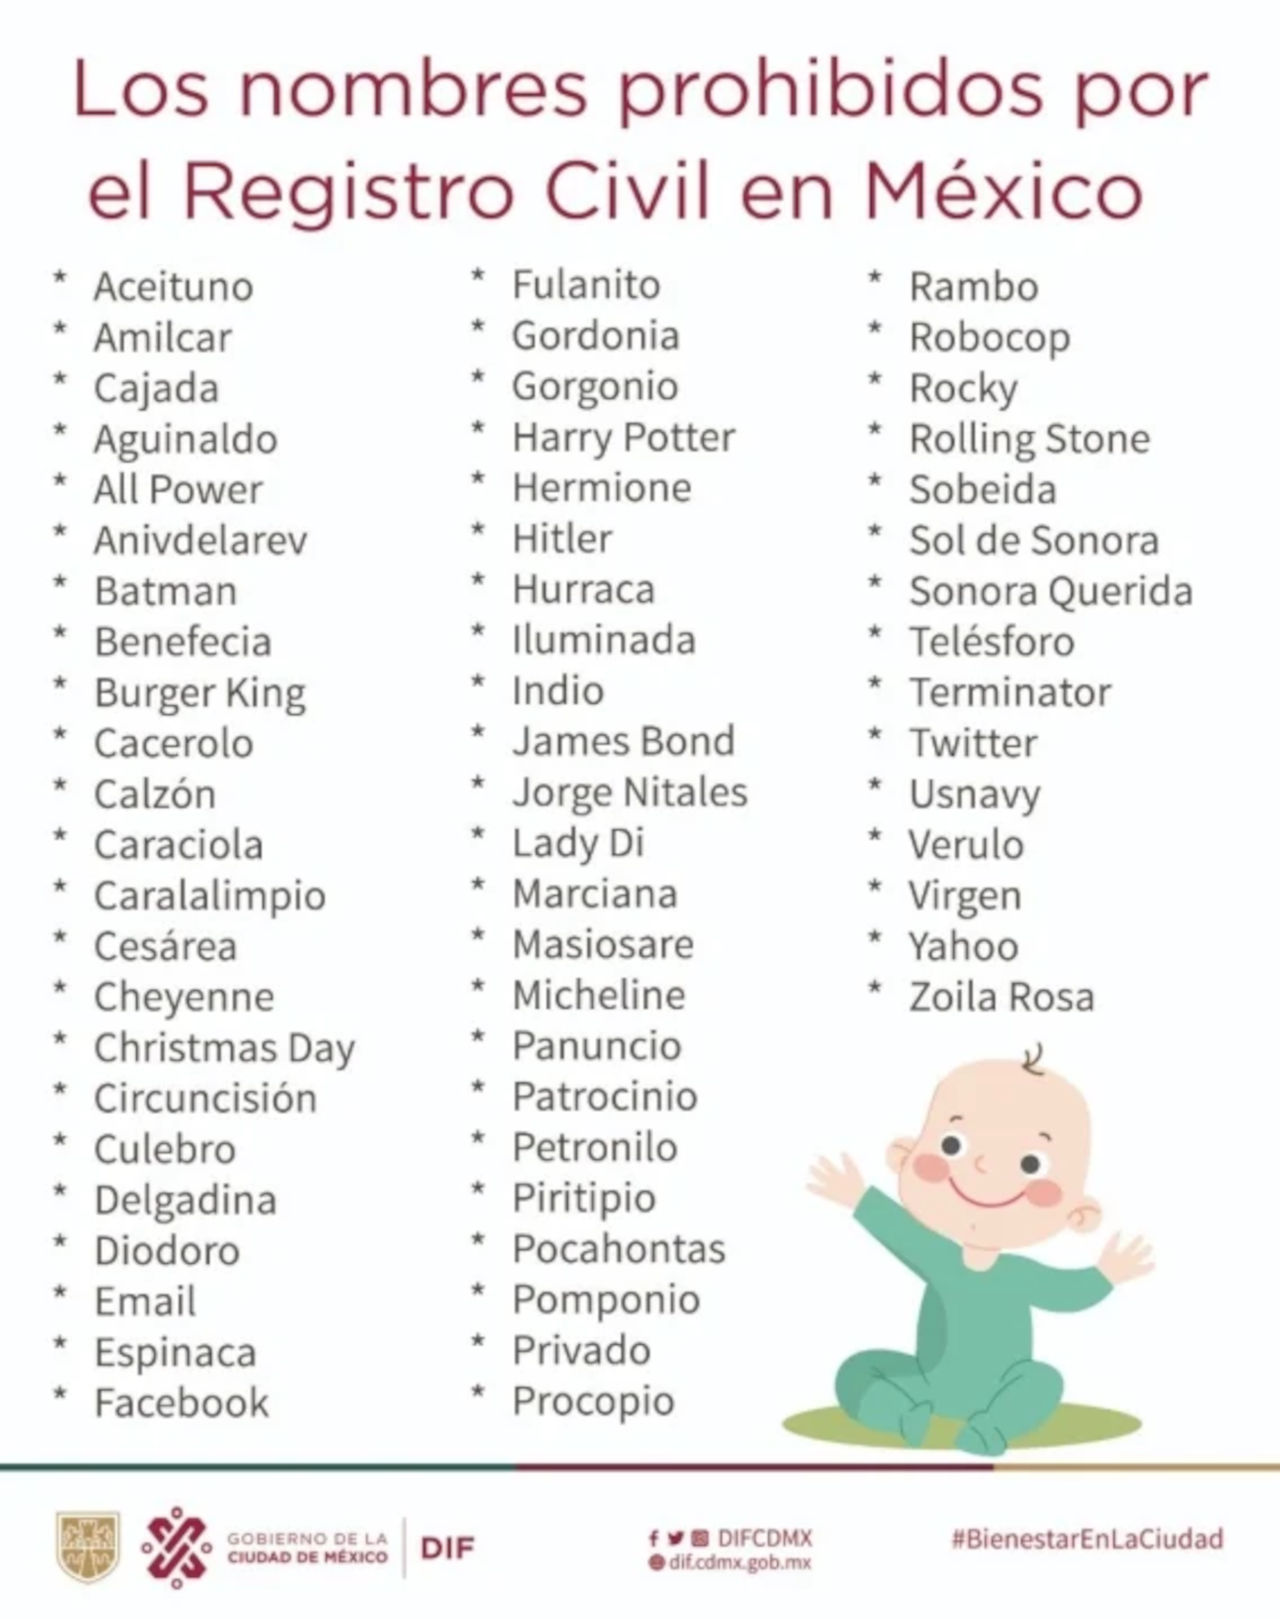 Ni Rambo, Robocop o Terminator: Estos son los nombres prohibidos en México 